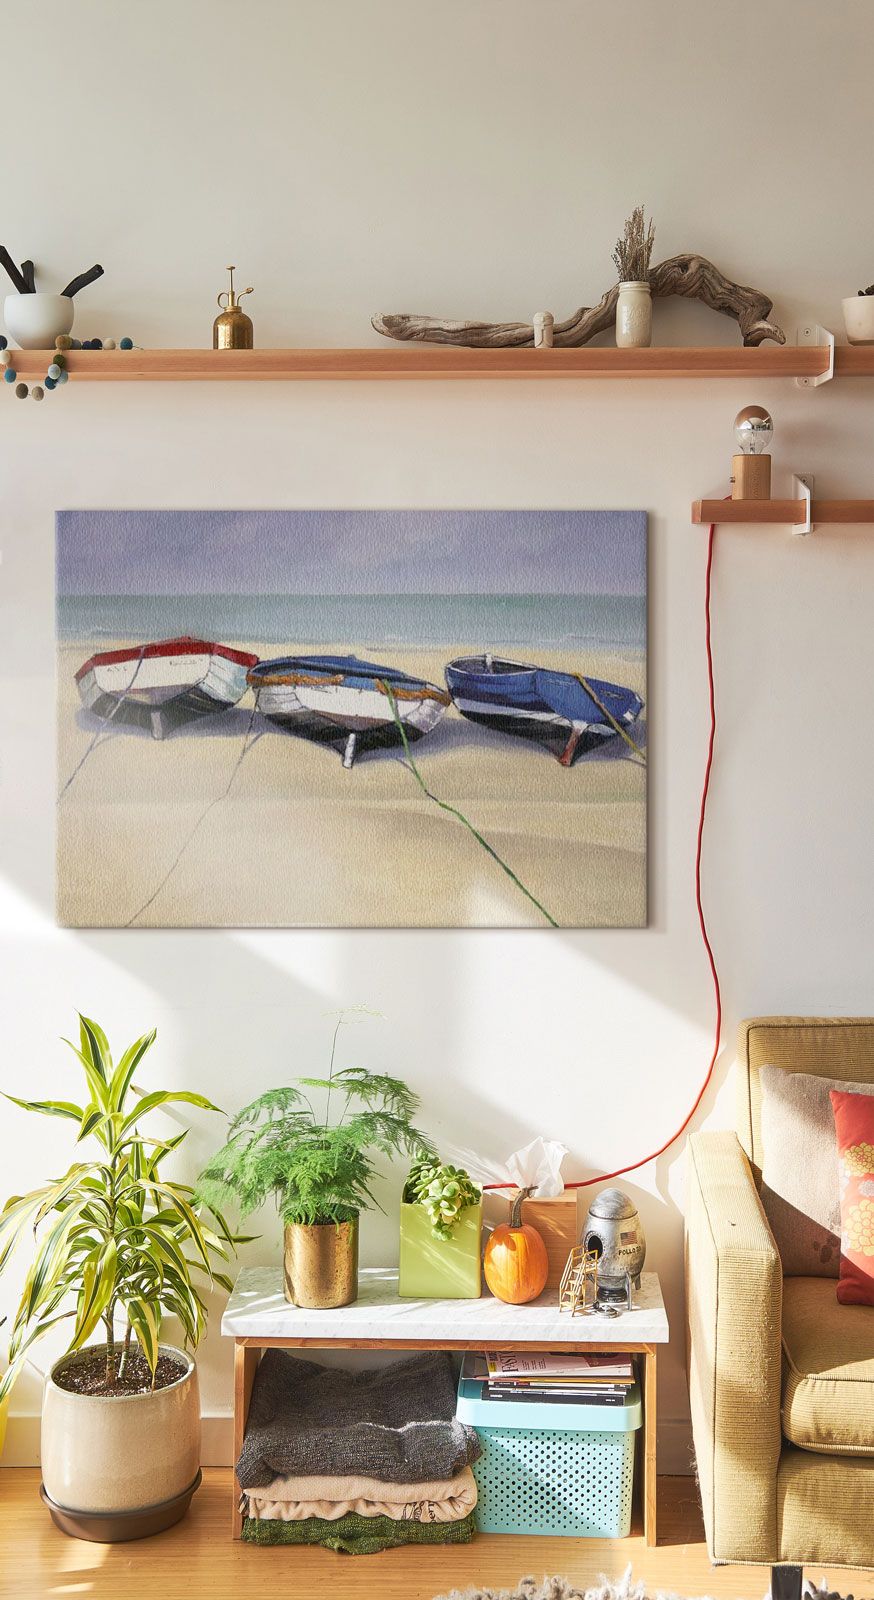 Obraz na płótnie do powieszenia na ścianie przedstawiający trzy łodzie na plaży